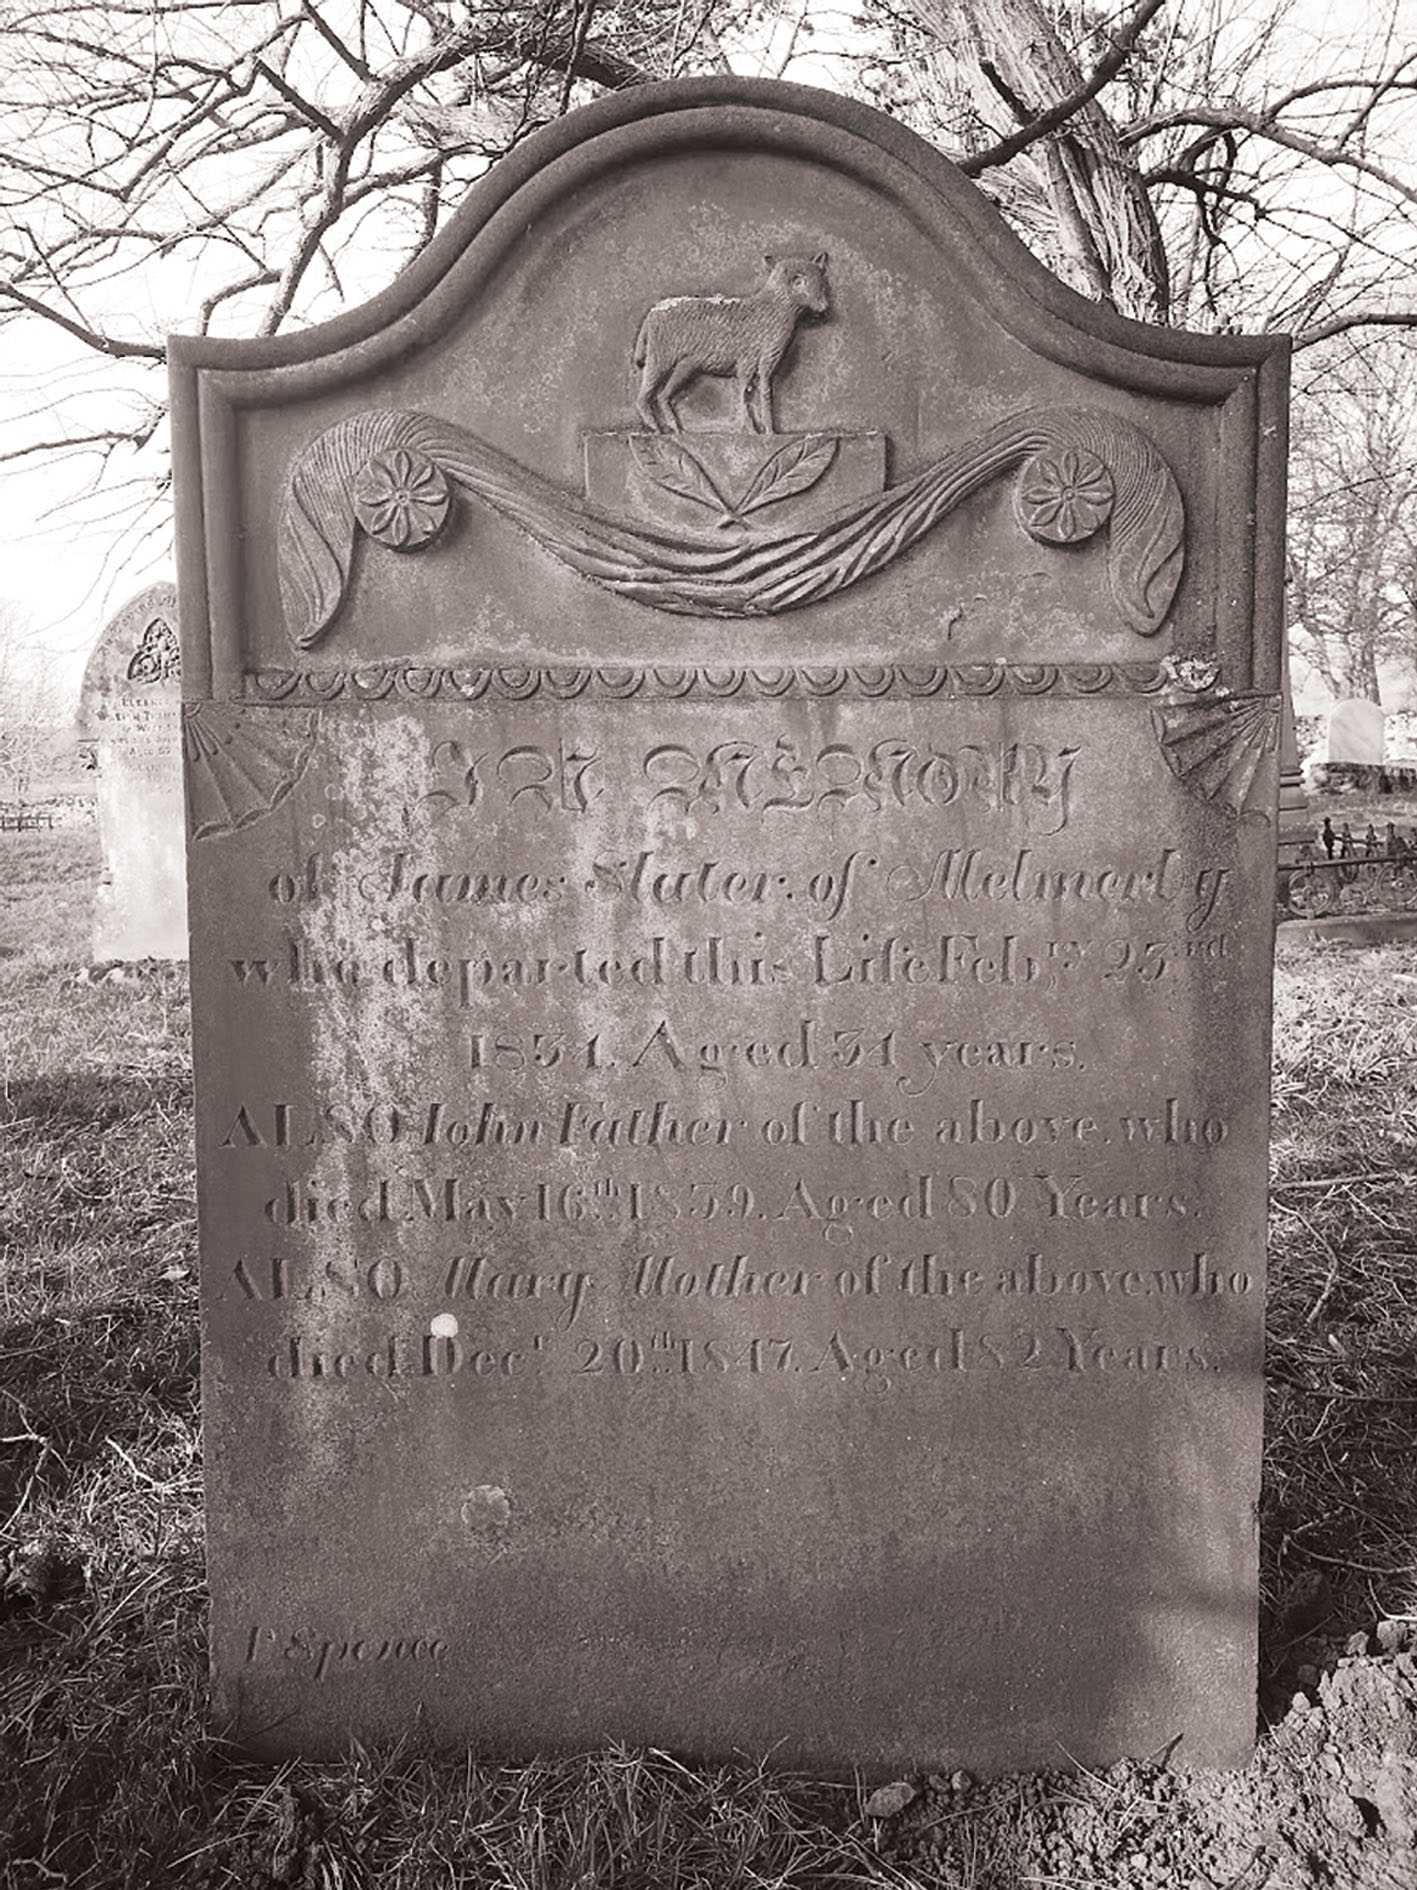 a grave stone